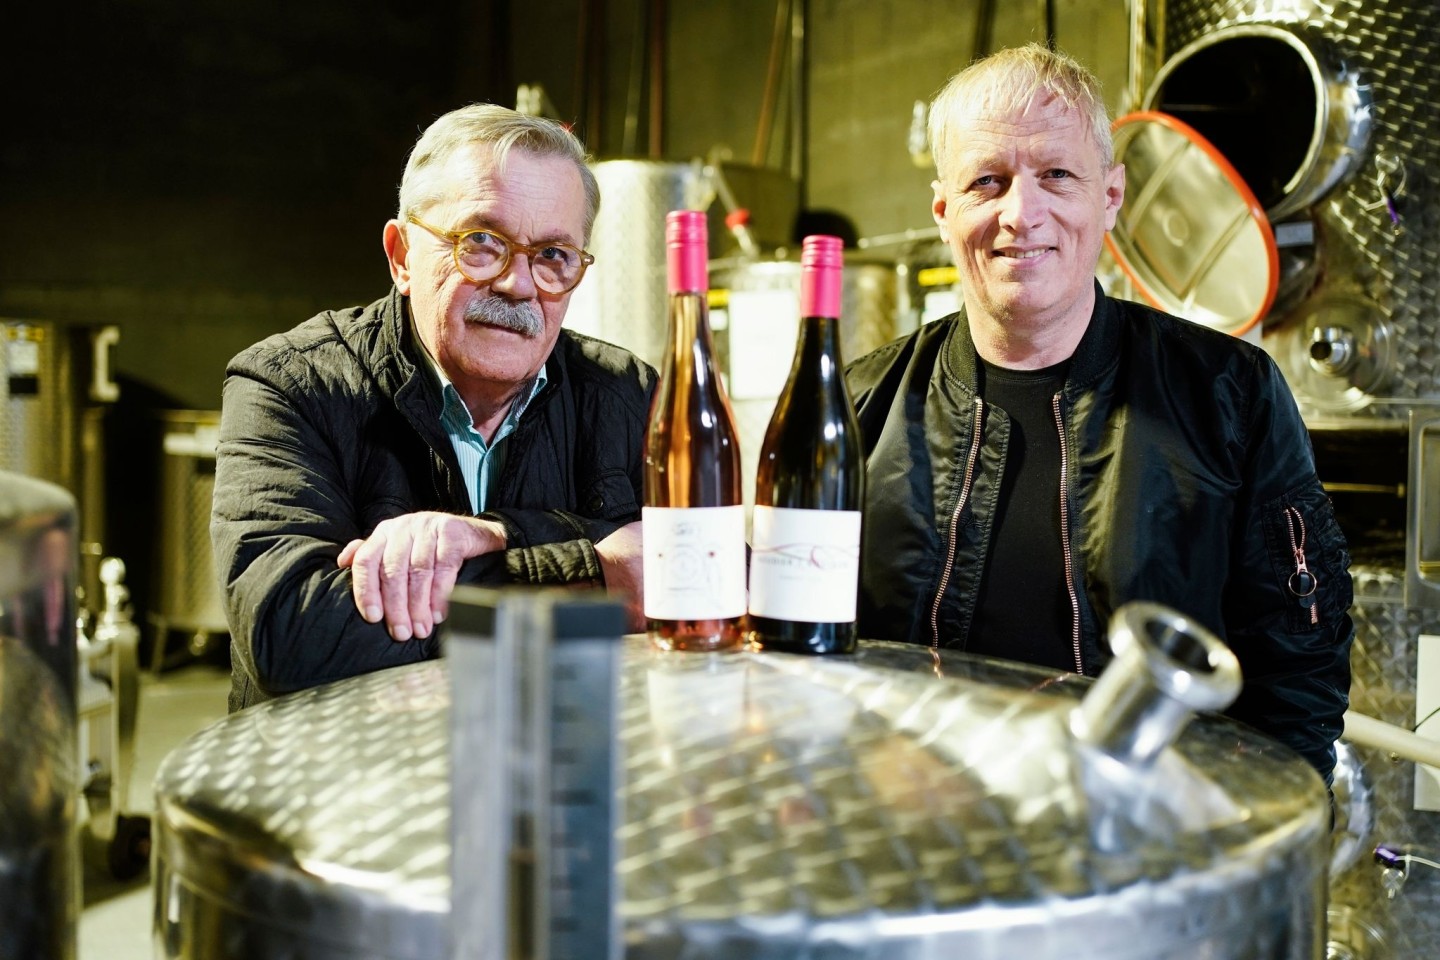 Robert Boudier (l) und Elmar Koeller, Inhaber des Weinguts Boudier und Koeller, zwischen Weinfässern.